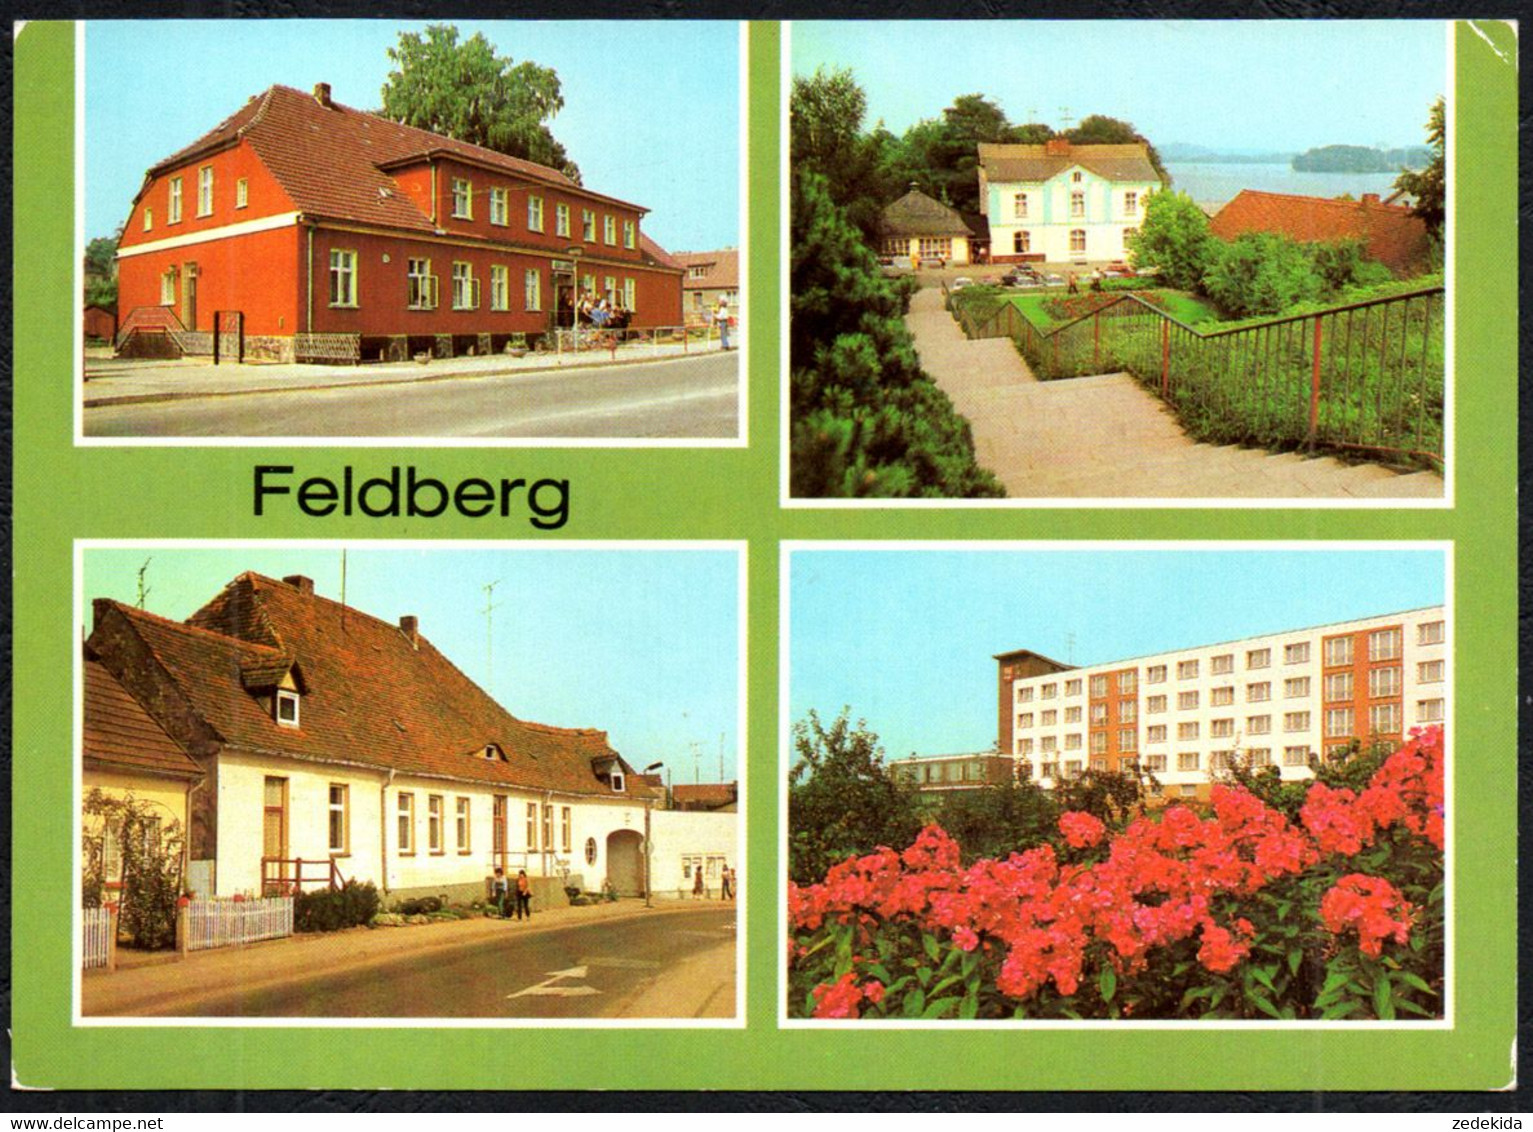 F8382 - Feldberg - Rathaus FDGB Heim Freundschaft Apotheke - Bild Und Heimat Reichenbach - Feldberg